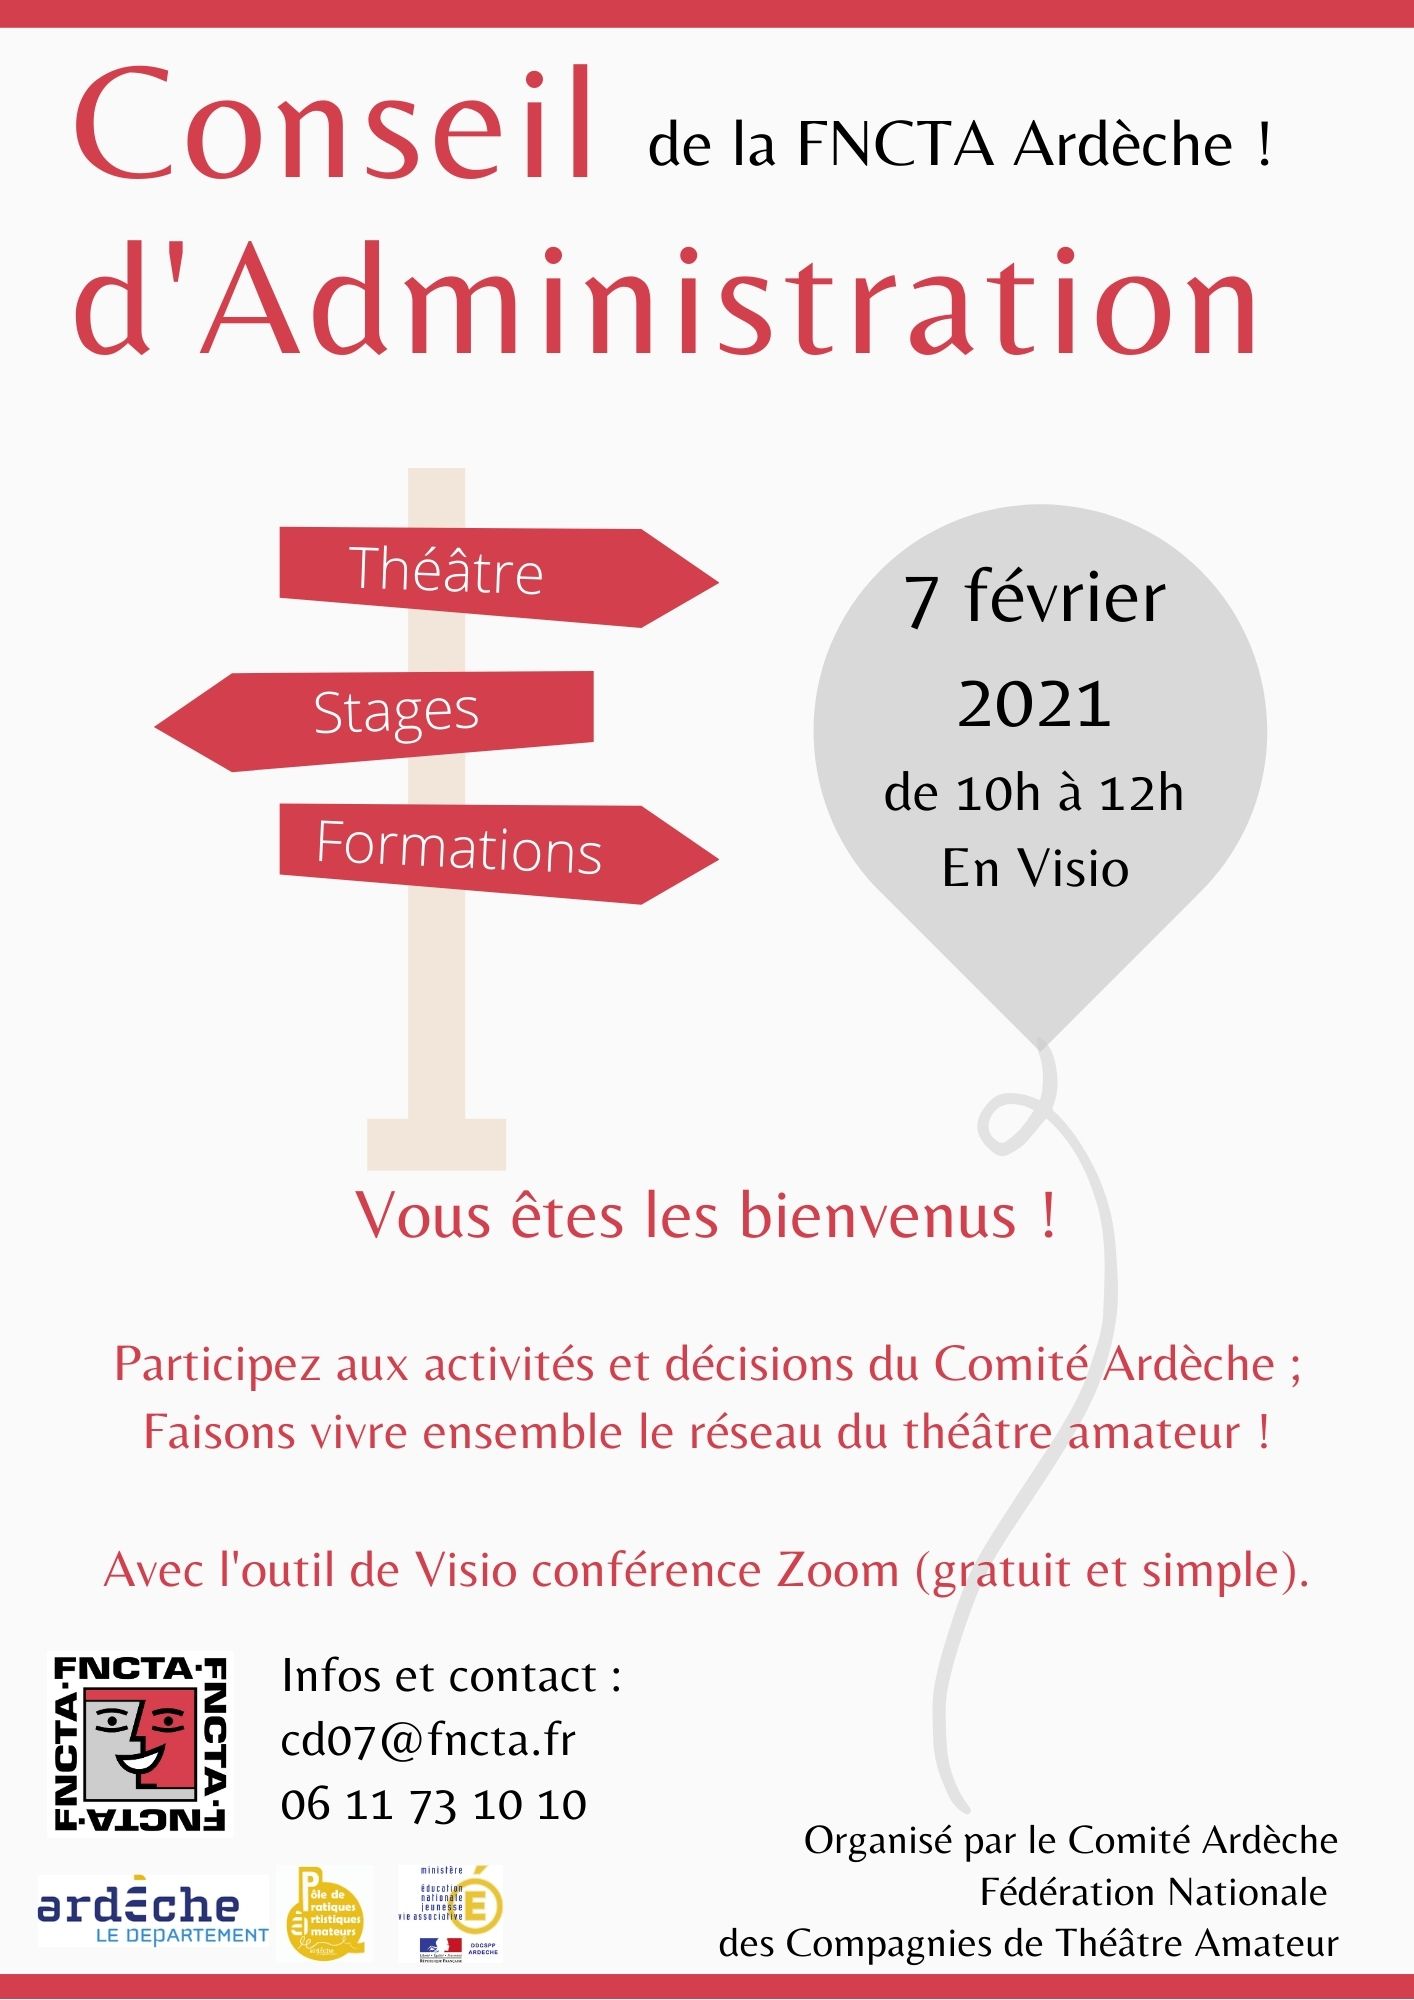 Conseil d'Administration de la FNCTA Ardèche – Dimanche 7 février 10h à 12h – Visio conférence